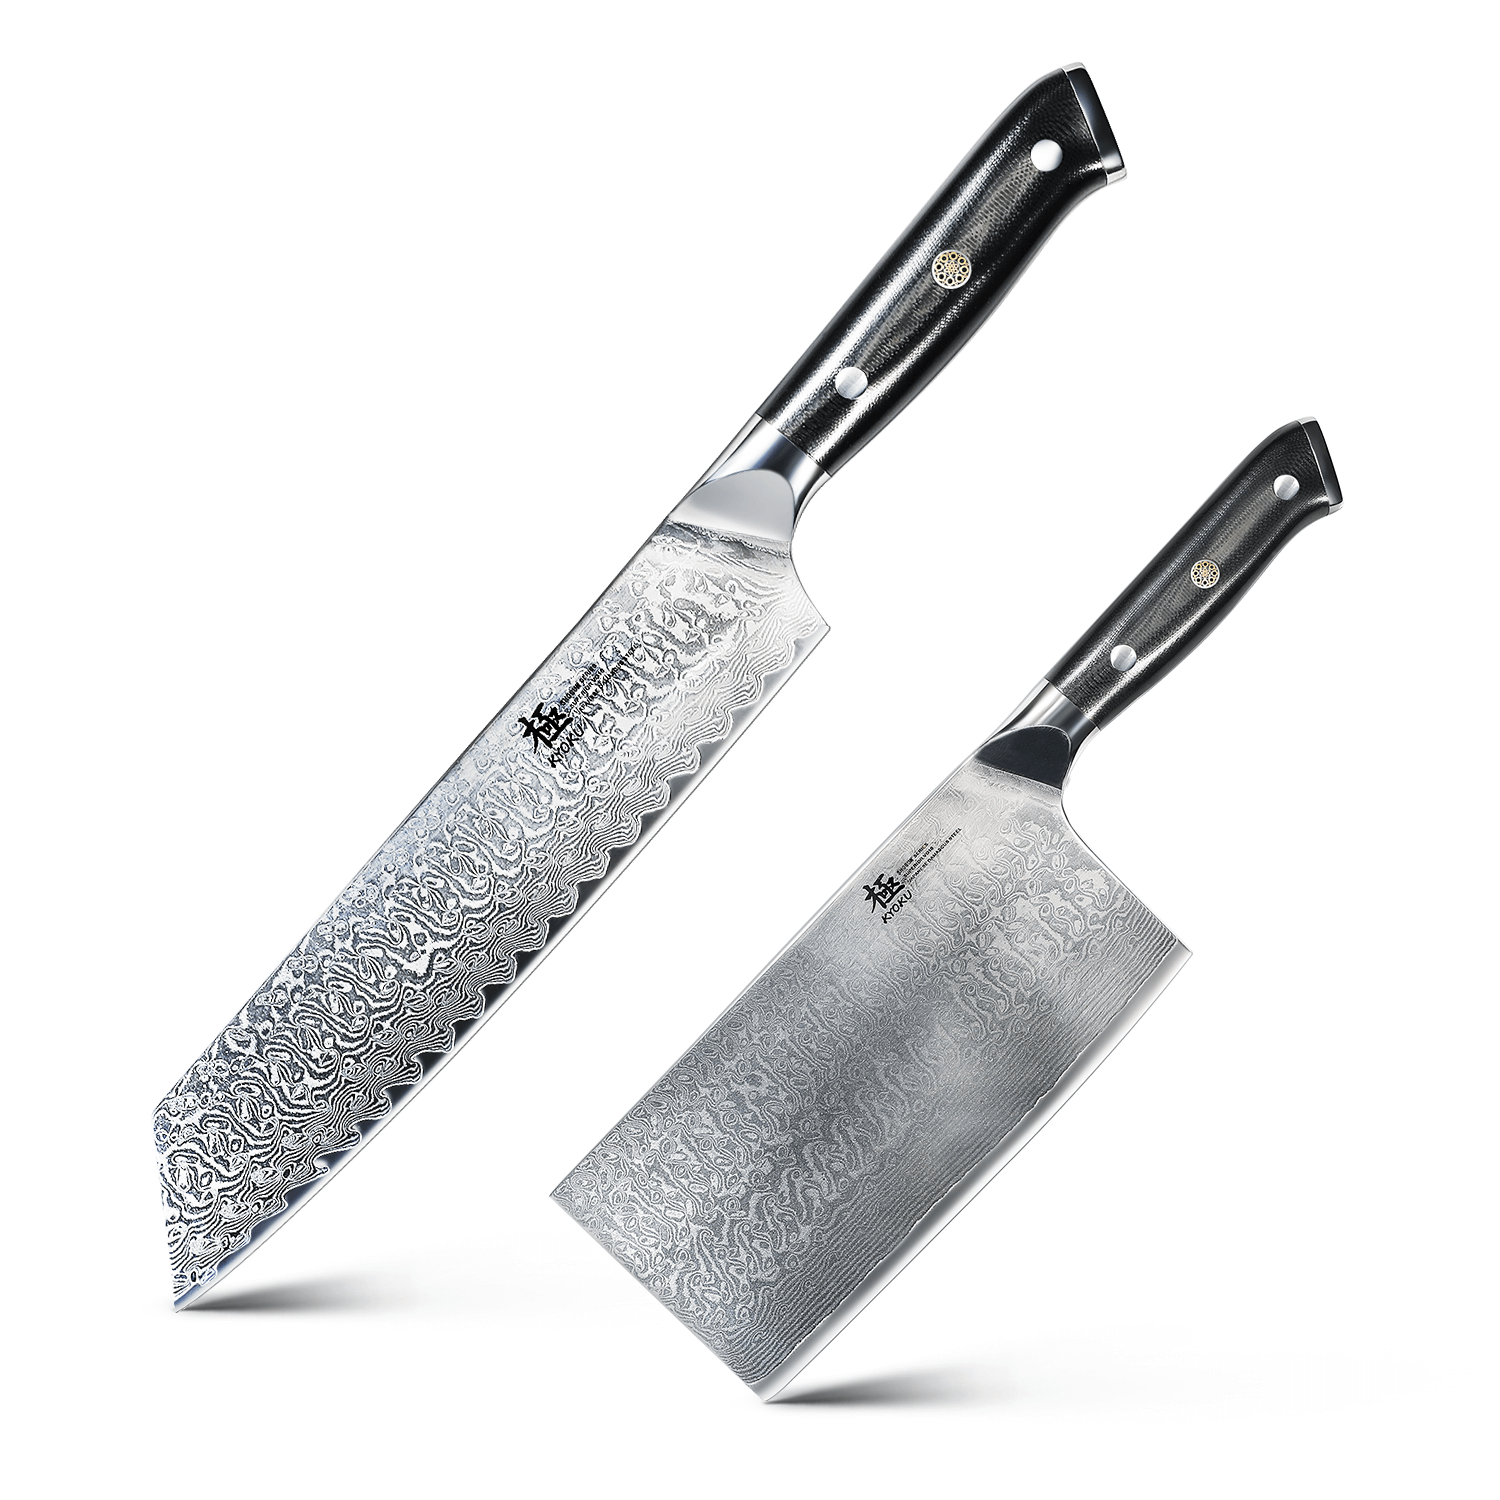 8 Kiritsuke Knife Damascus Stainless Steel Kitchen Chef's Knife Cleaver  Sharp